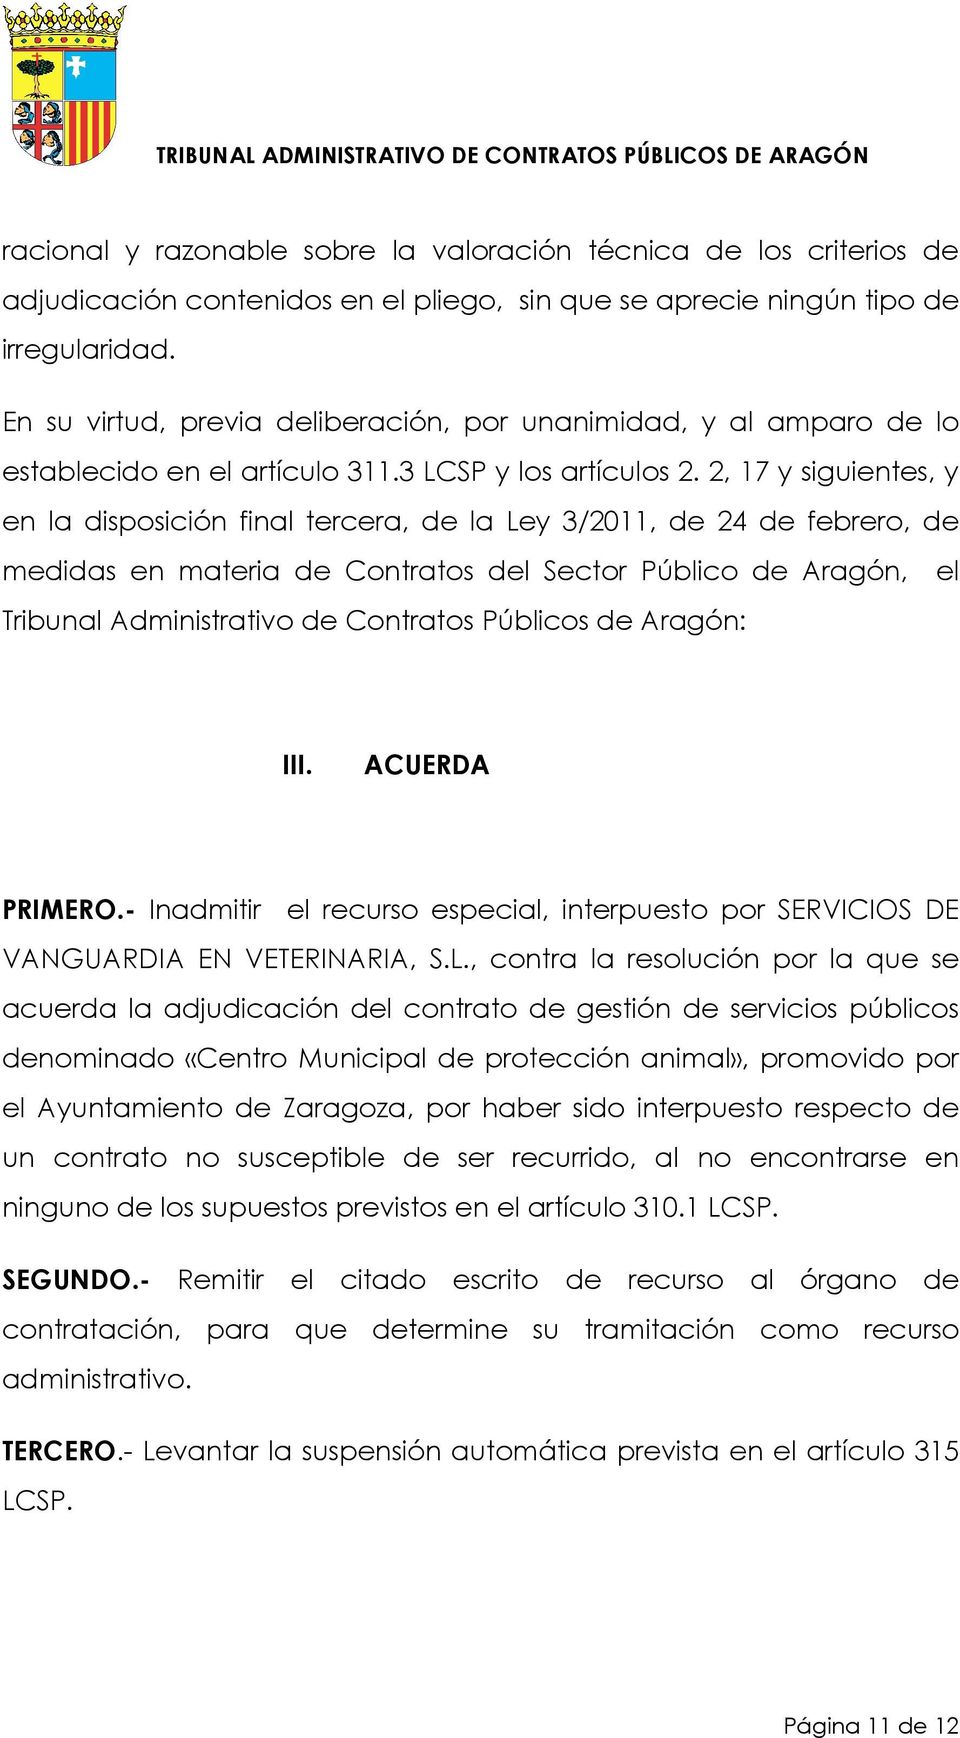 2, 17 y siguientes, y en la disposición final tercera, de la Ley 3/2011, de 24 de febrero, de medidas en materia de Contratos del Sector Público de Aragón, el Tribunal Administrativo de Contratos